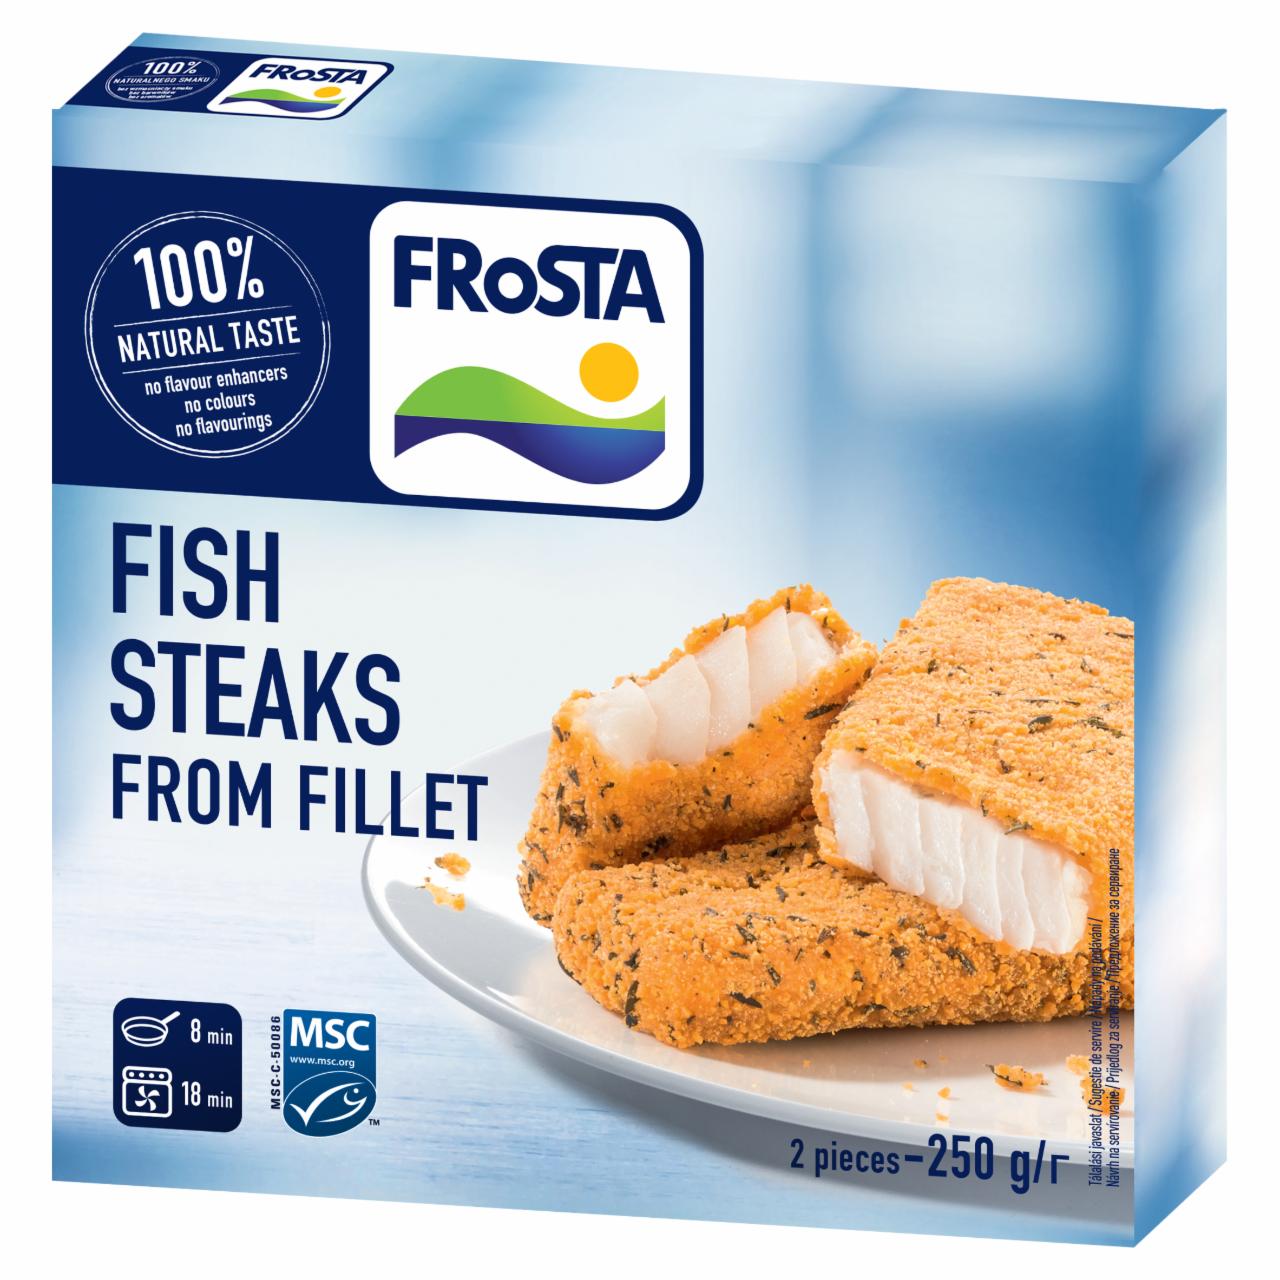 Képek - FRoSTA gyorsfagyasztott hal steak 250 g